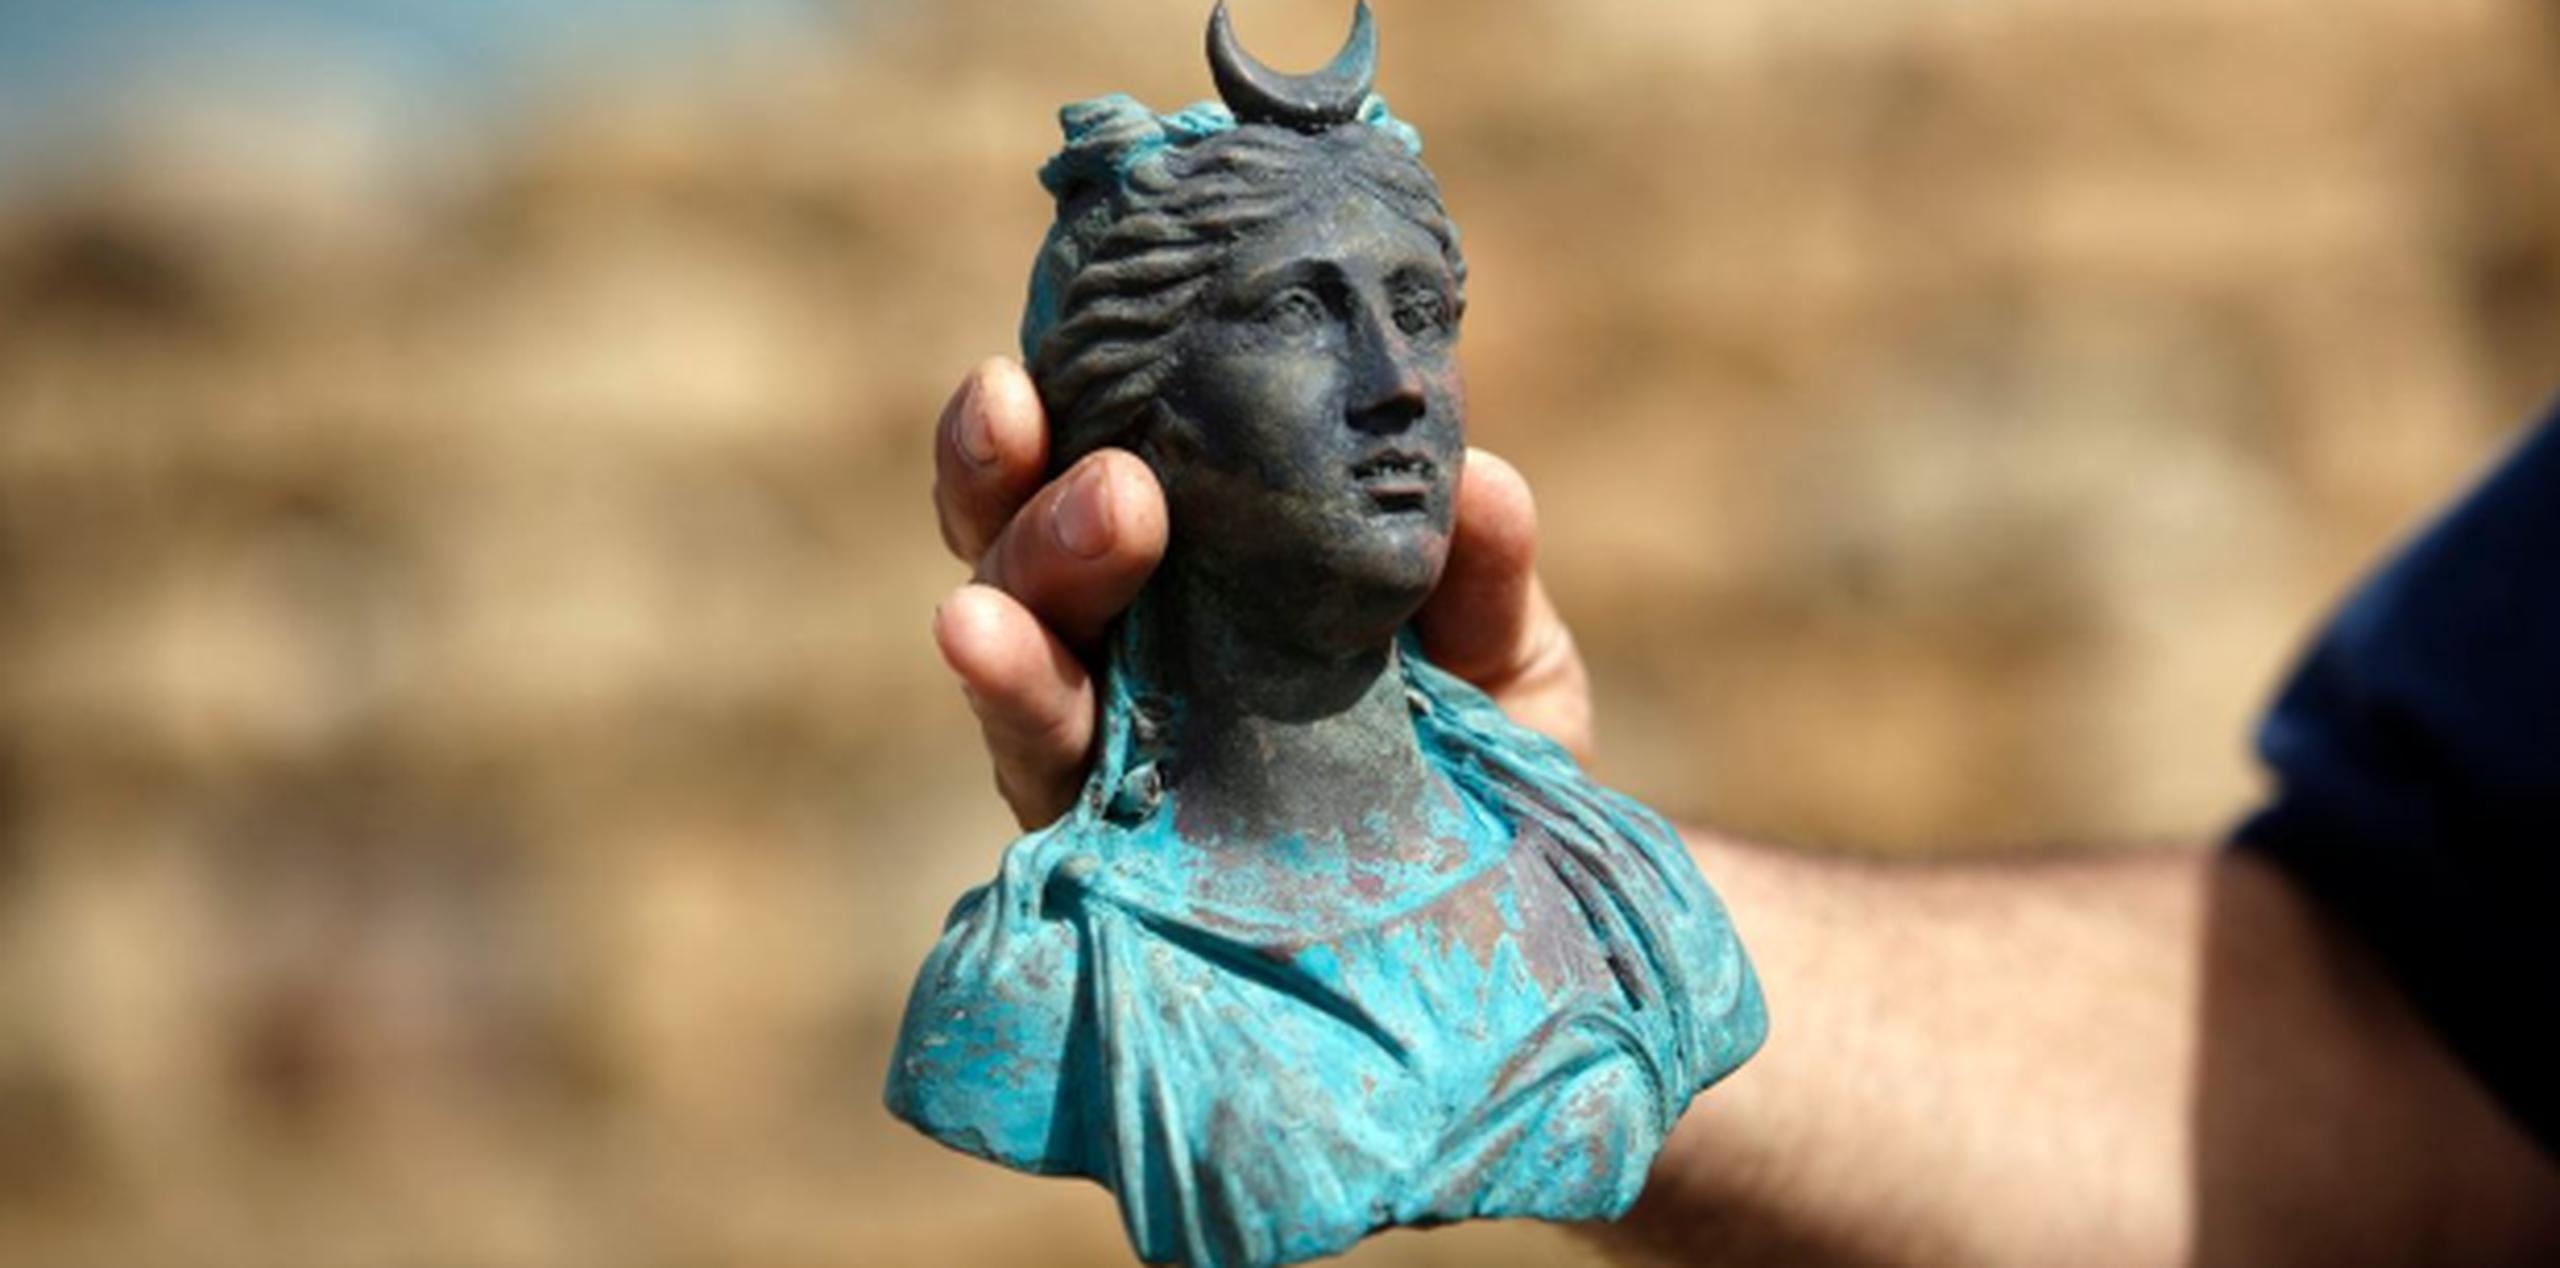 Los tesoros fueron hallados el mes pasado por los buzos Ran Feinstein y Ofer Raanan cuando se toparon con un ancestral naufragio cerca del puerto de Caesarea. (EFE)